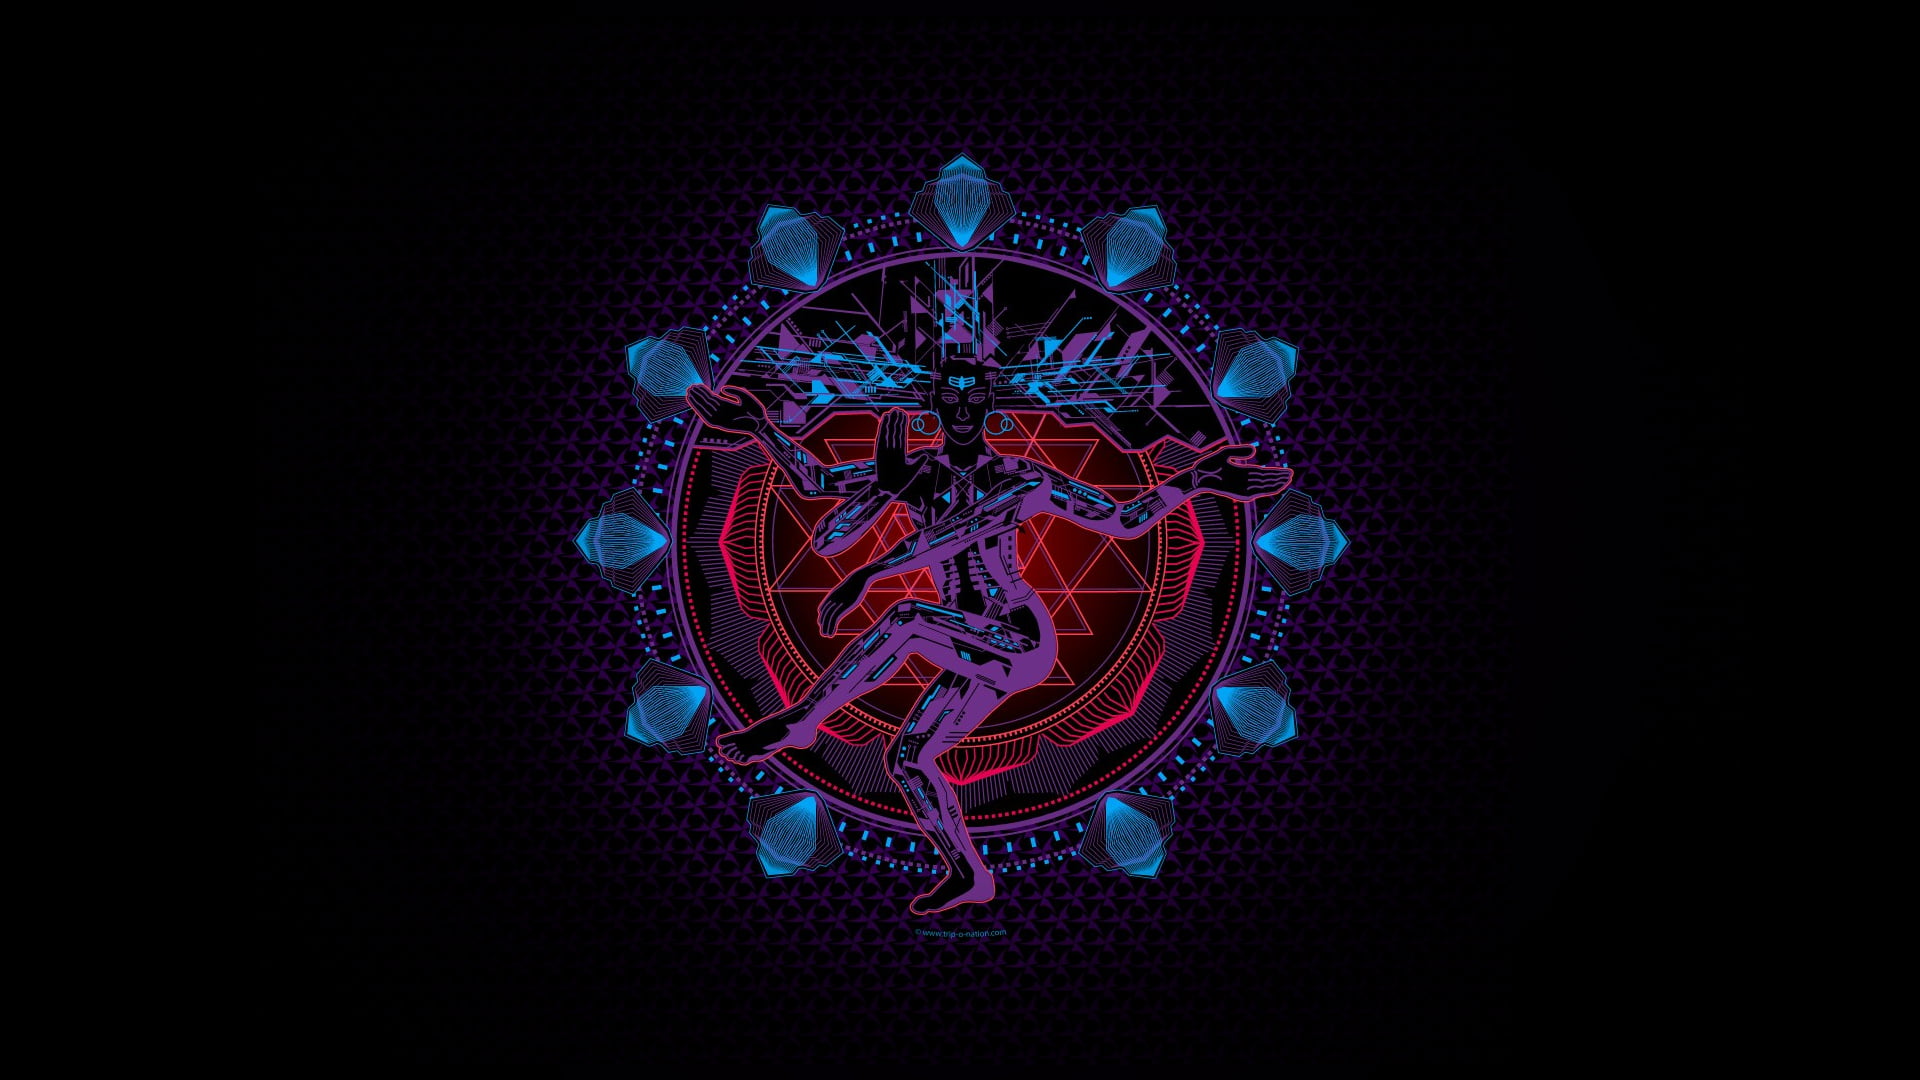 Free download | HD wallpaper: Shiva, digital art, cyber, cyberpunk ...